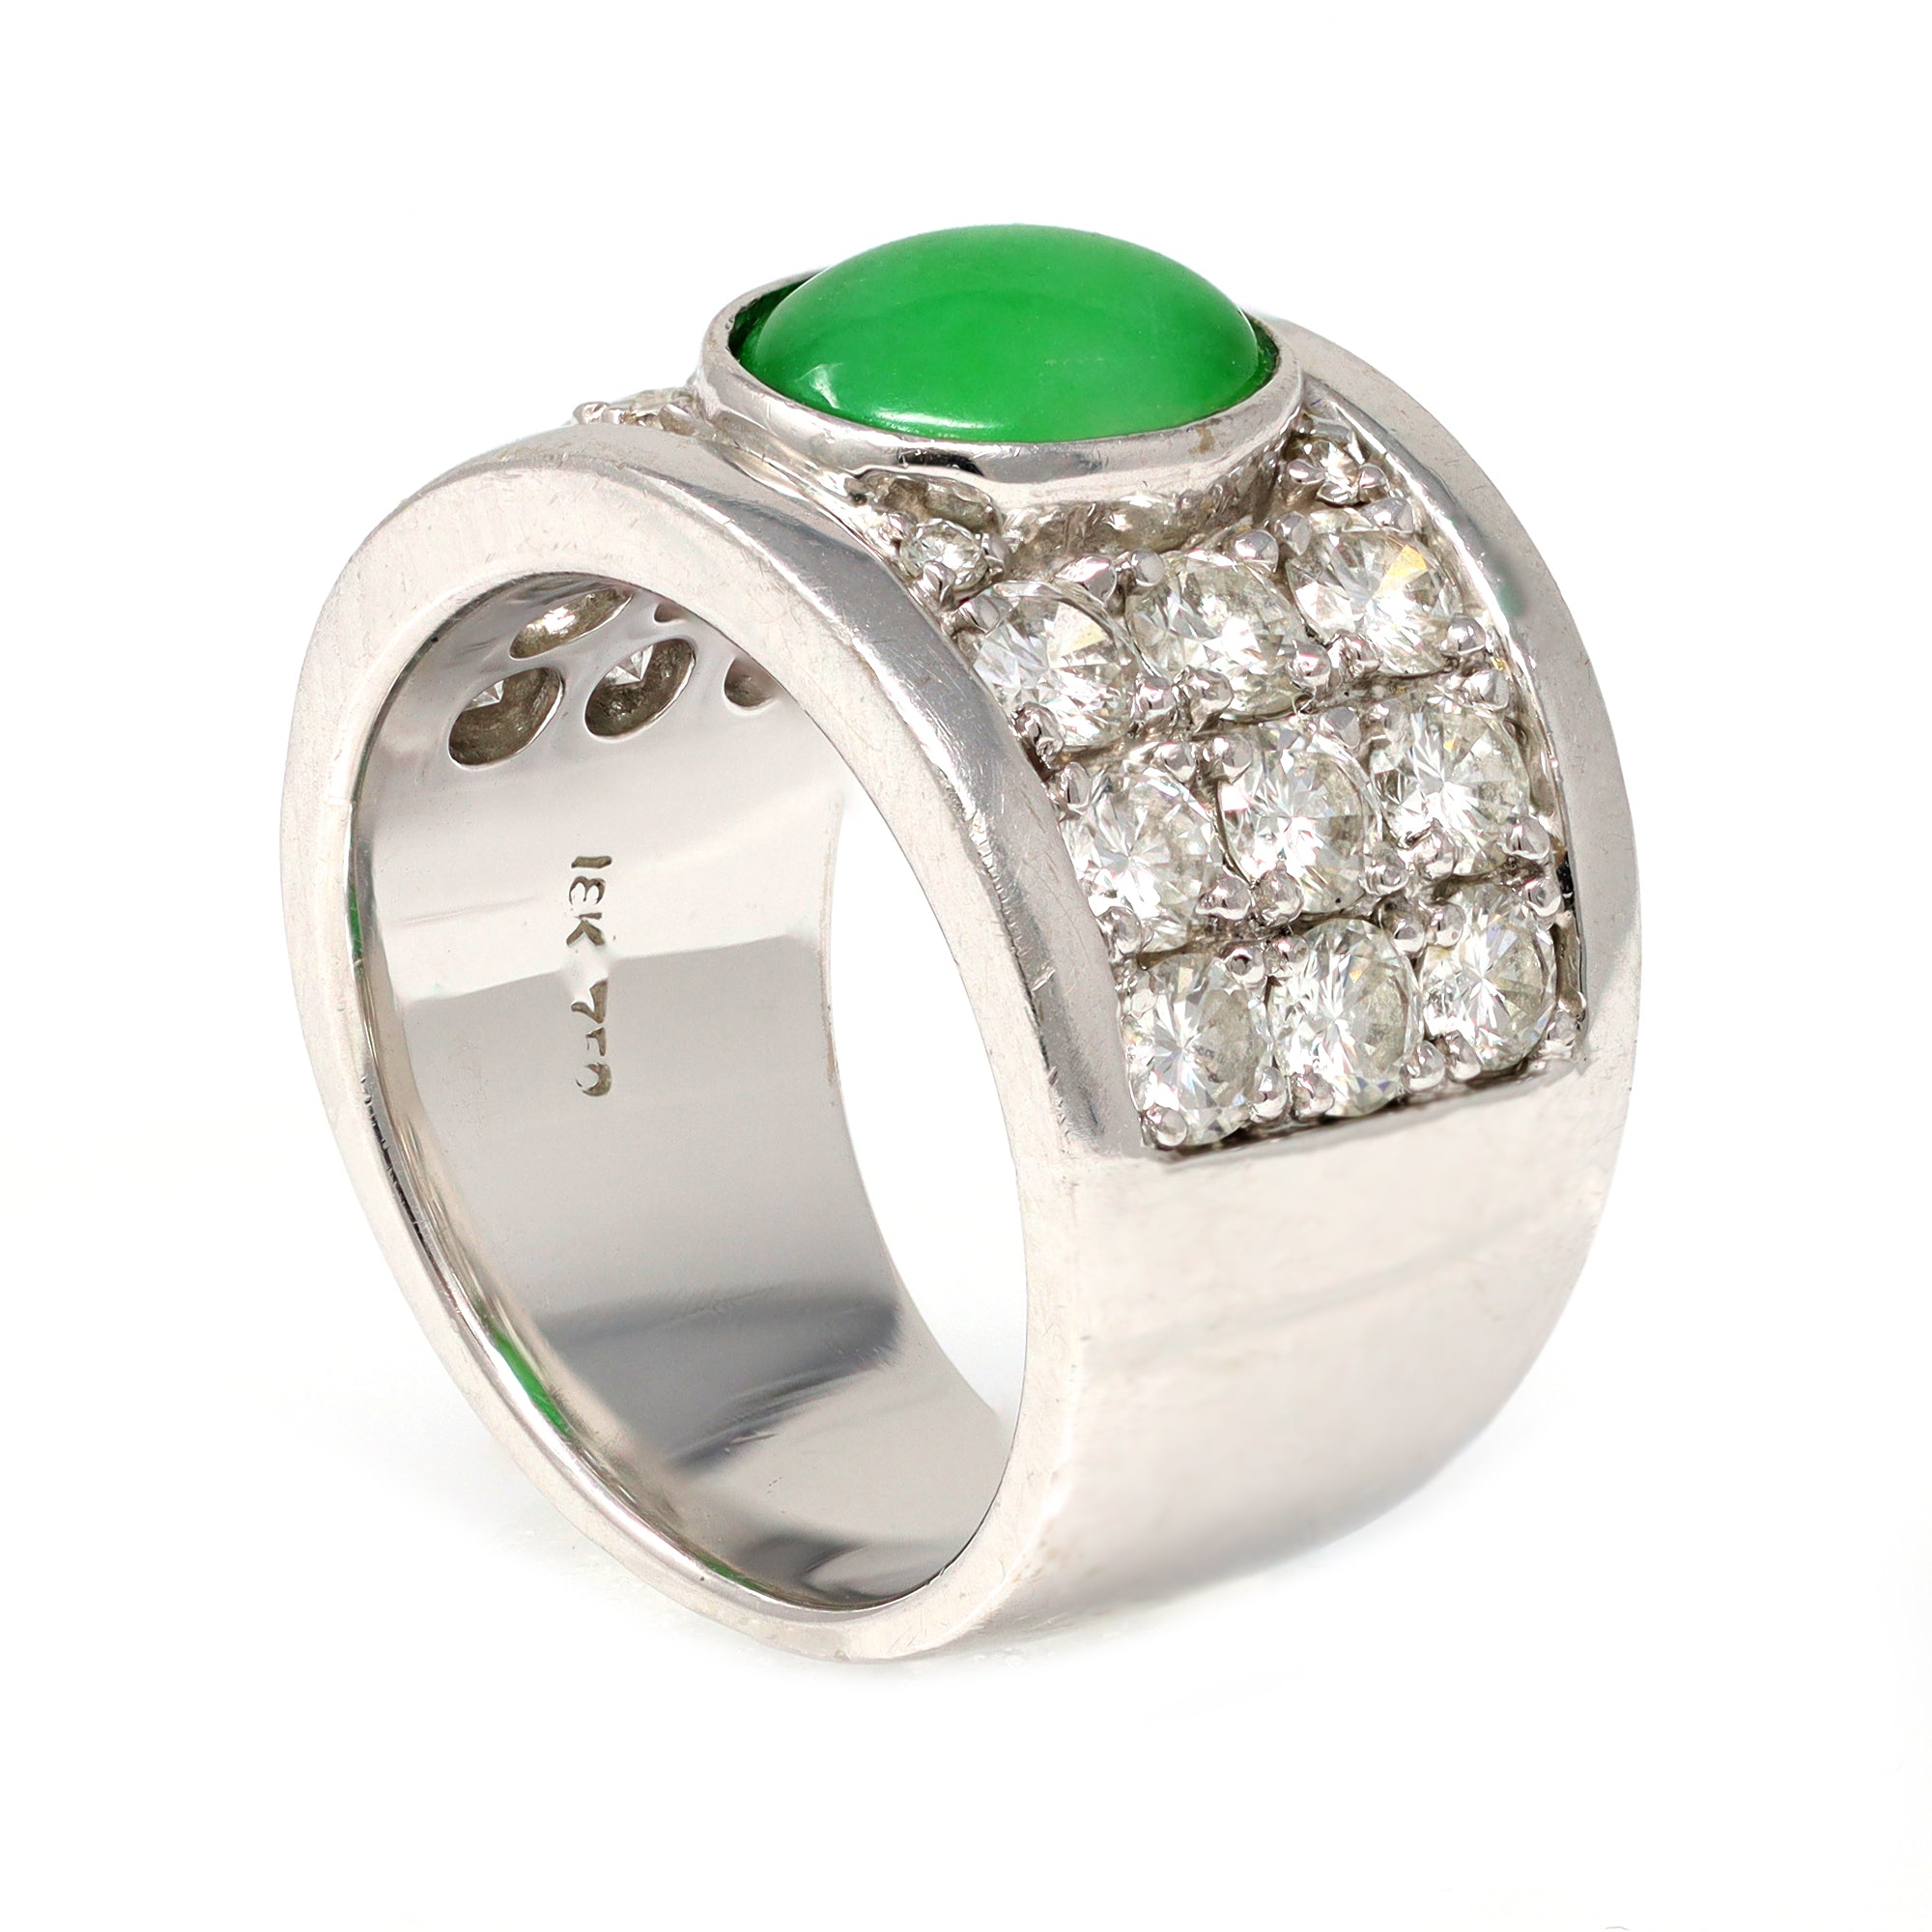 Jadeite Jade and Diamond Wide Band Ring in 18 Karat White Gold hallmarks view